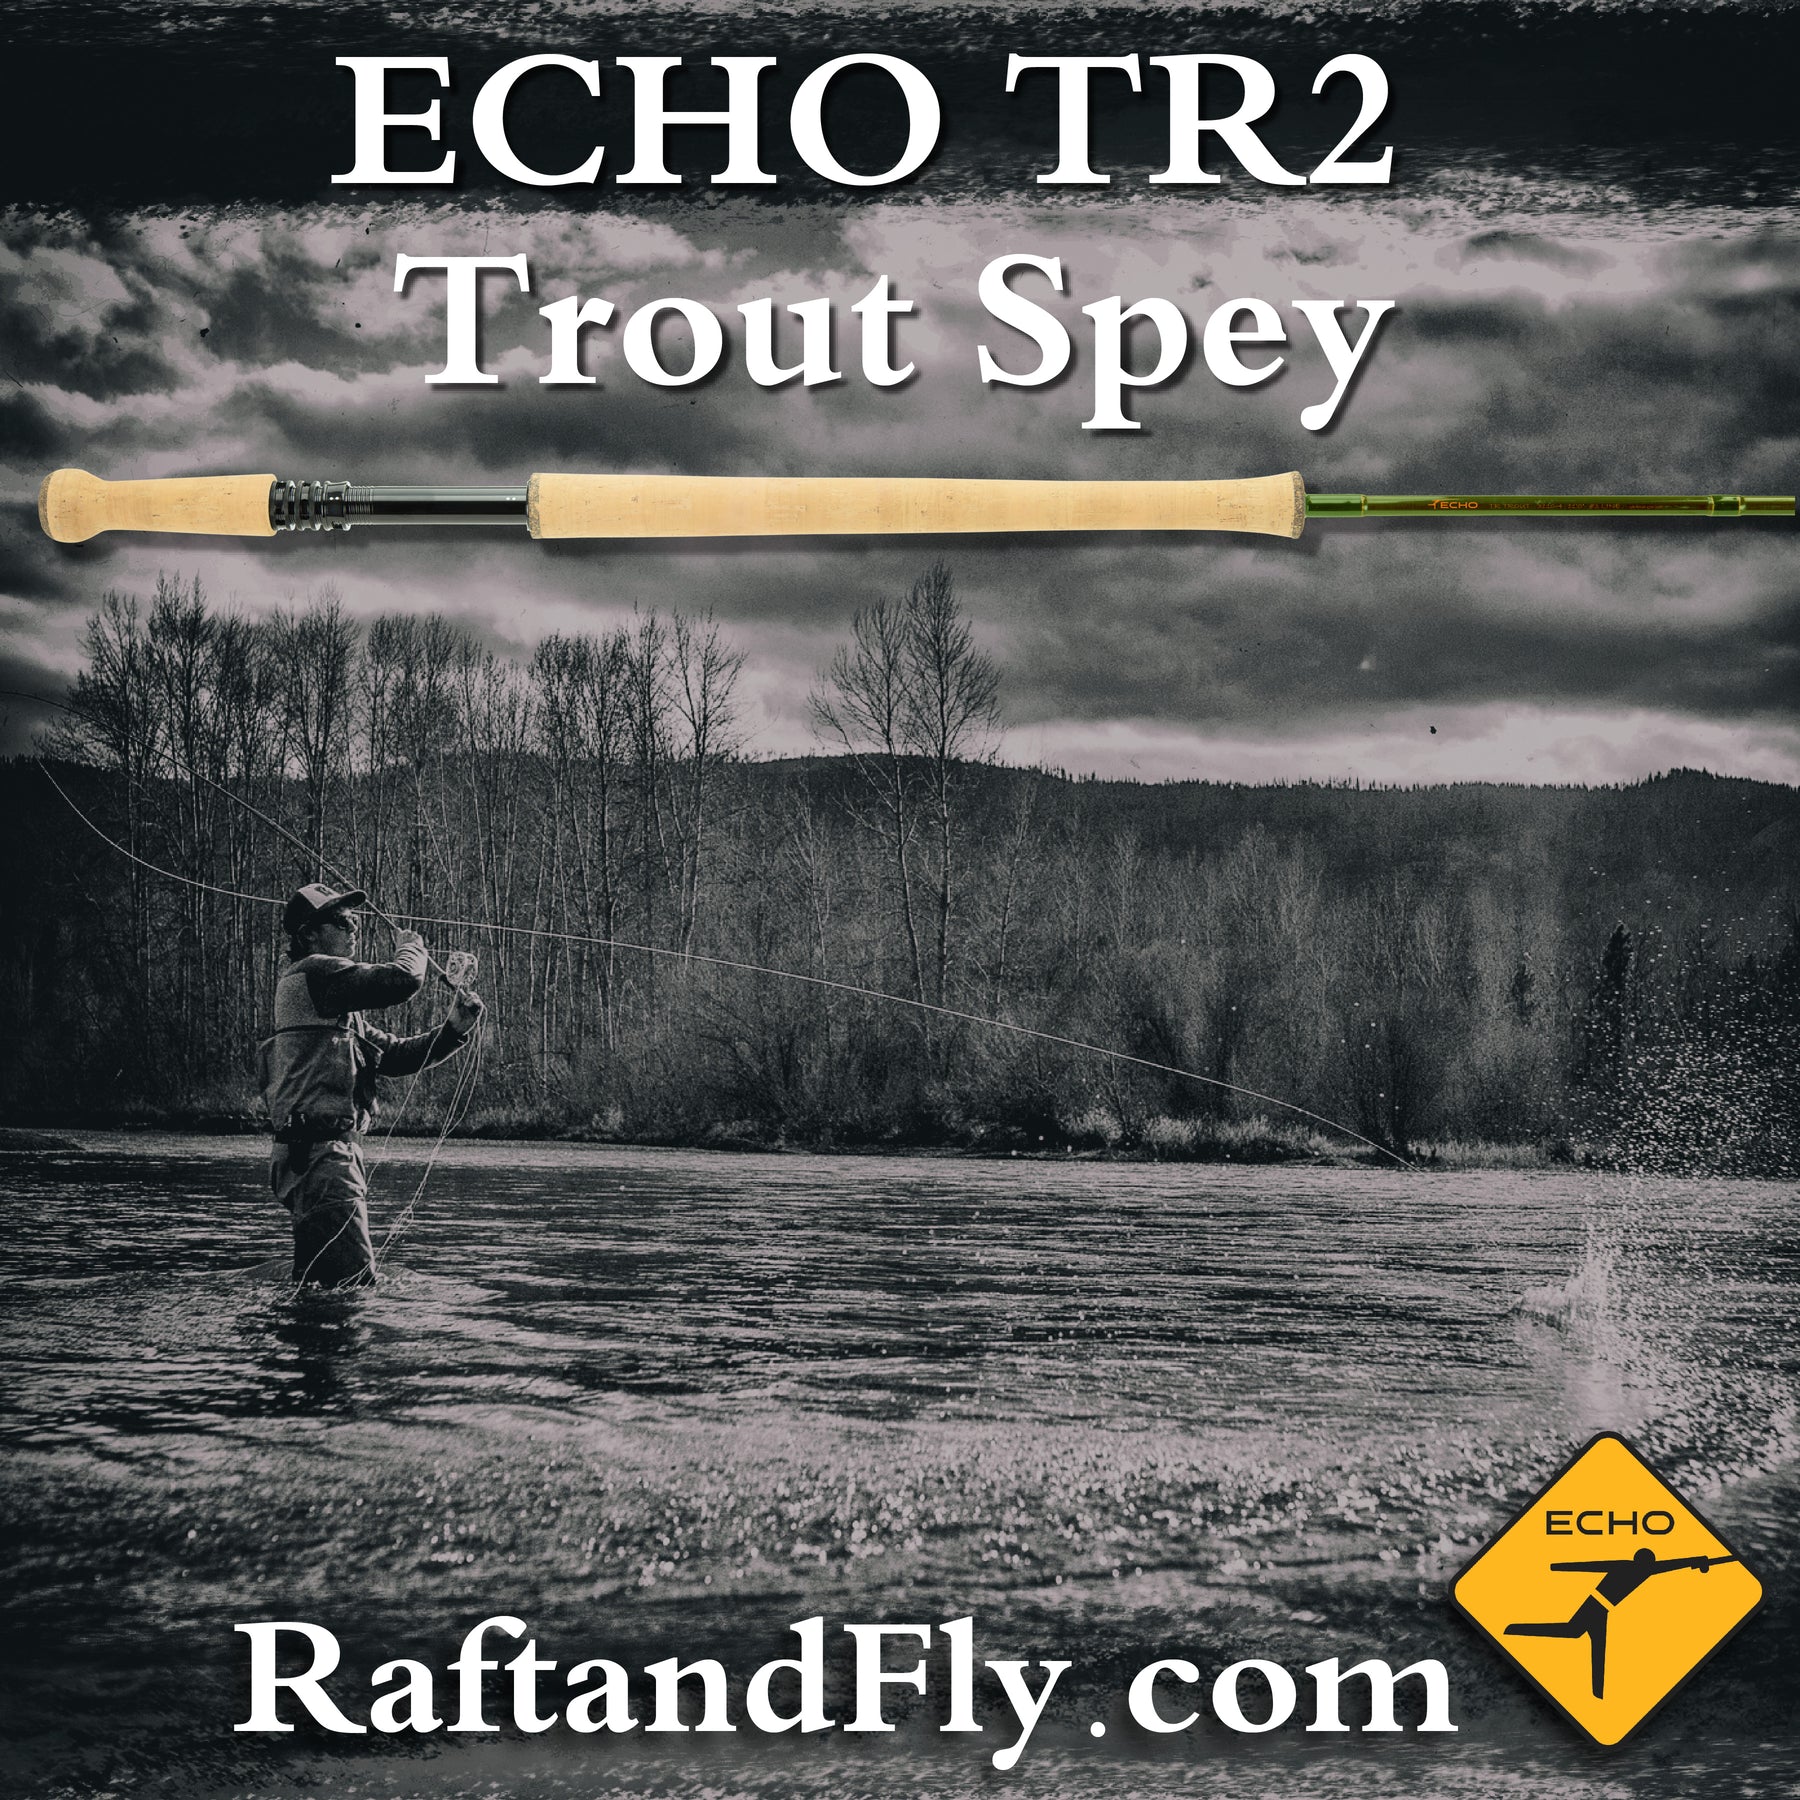 Echo TR Fly Rod - 13FT 0in 7wt